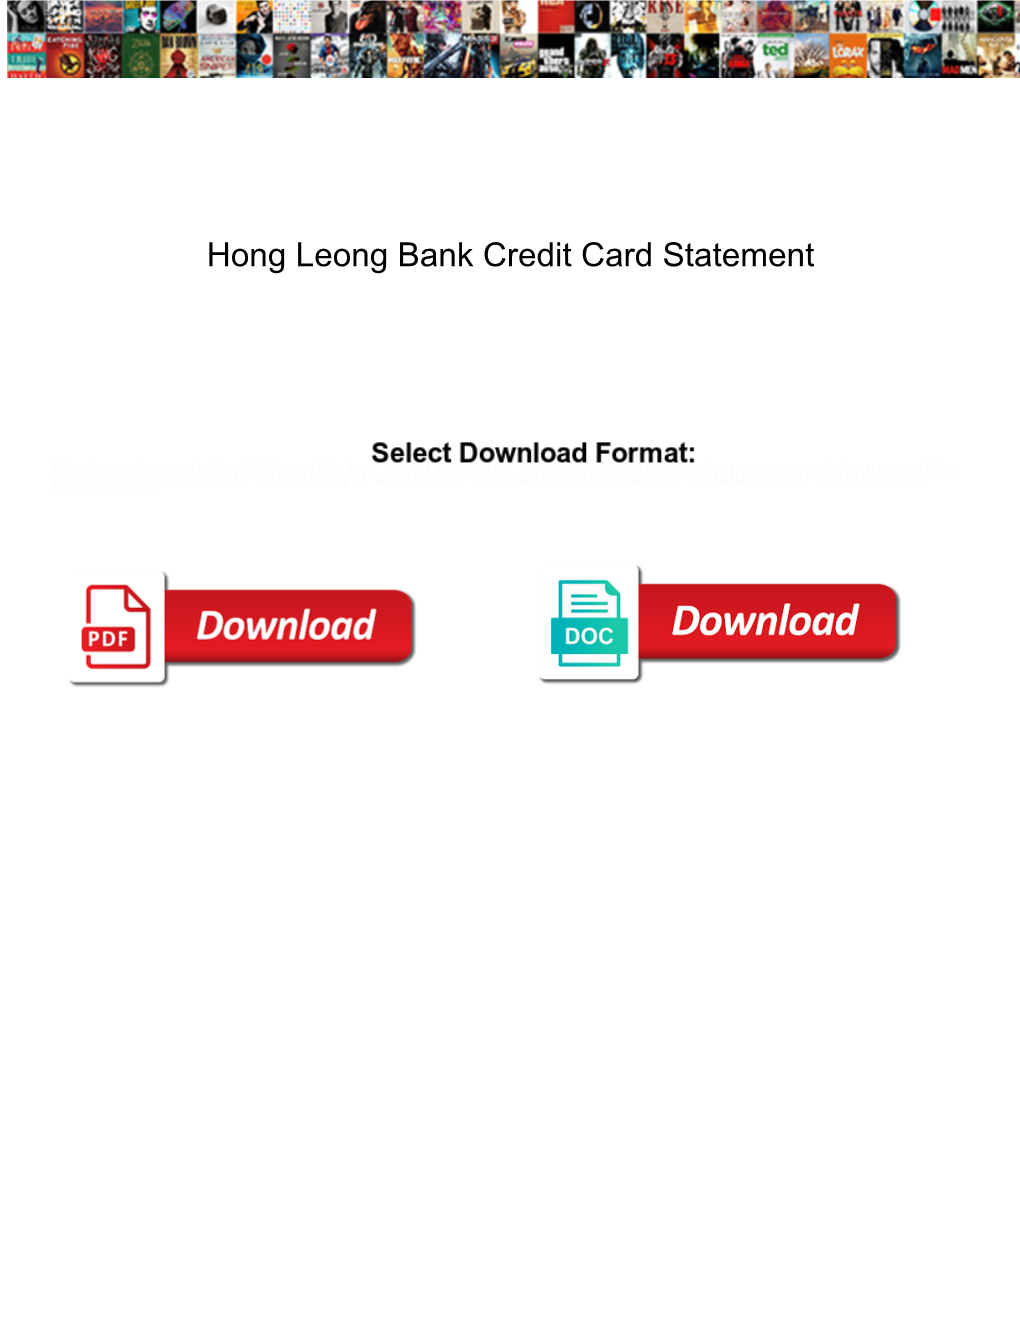 Hong Leong Bank Credit Card Statement